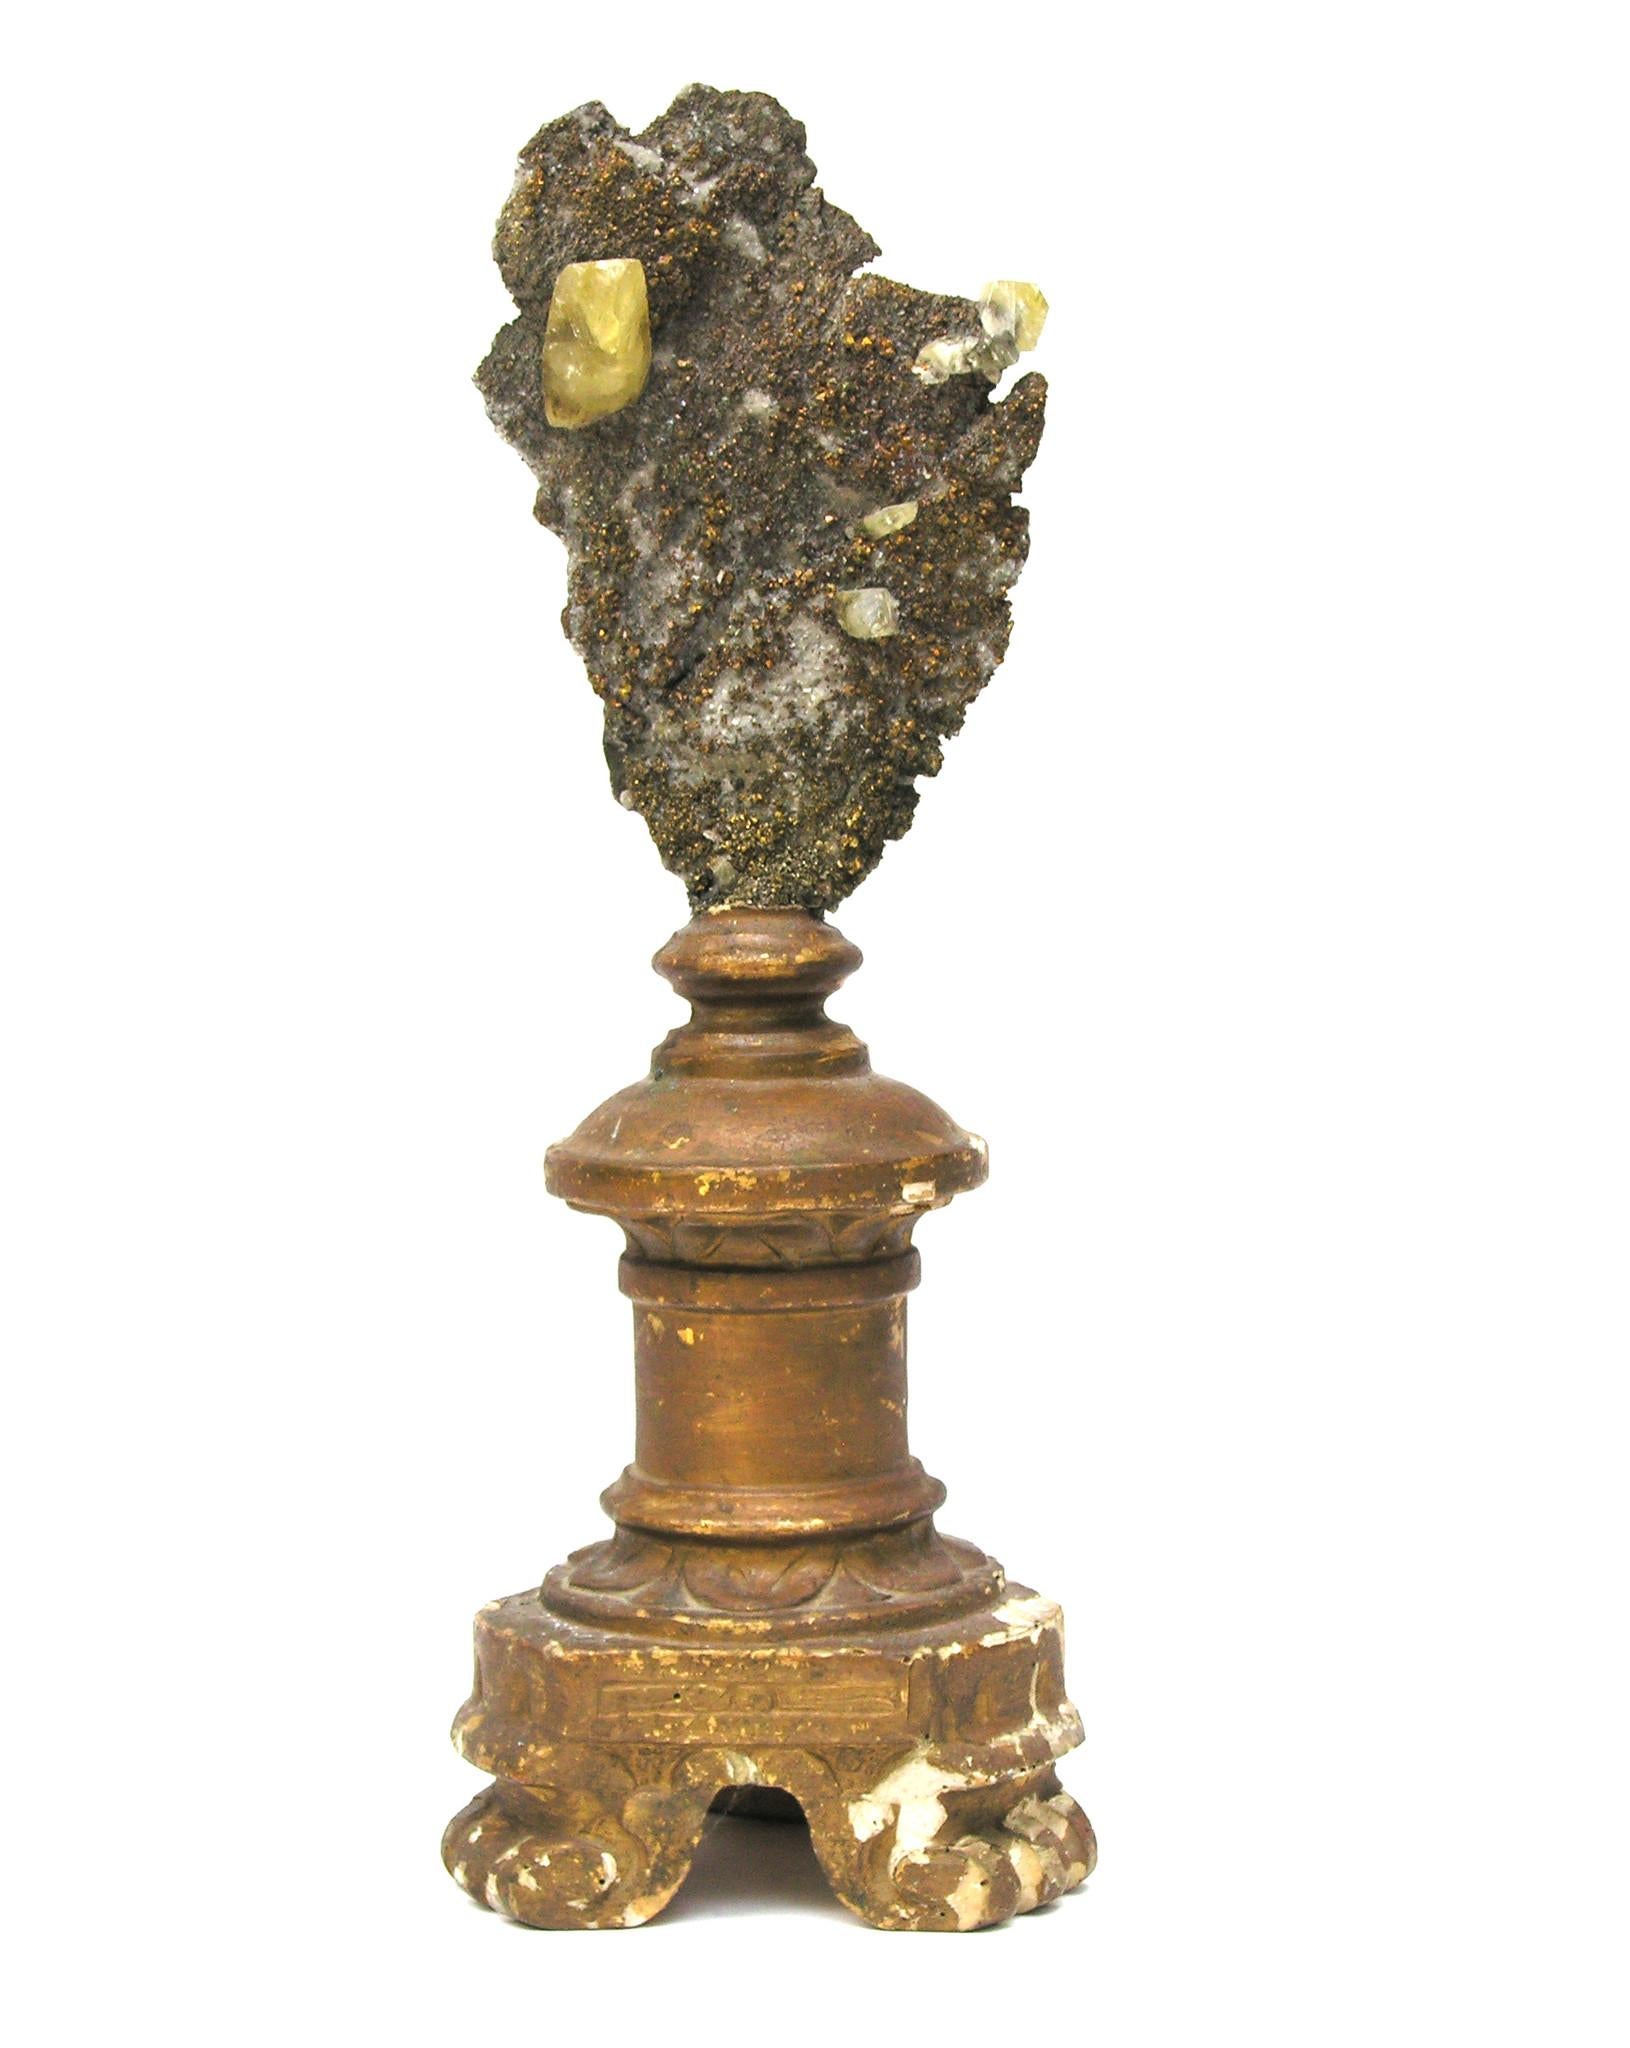 Skulpturaler italienischer Kerzenleuchter aus dem 18. Jahrhundert mit Chalkopyrit- und Calcitkristallen in Matrix.

Das vergoldete Fragment war ursprünglich Teil eines Kerzenständers in einer historischen italienischen Kirche in Italien. Es ist mit